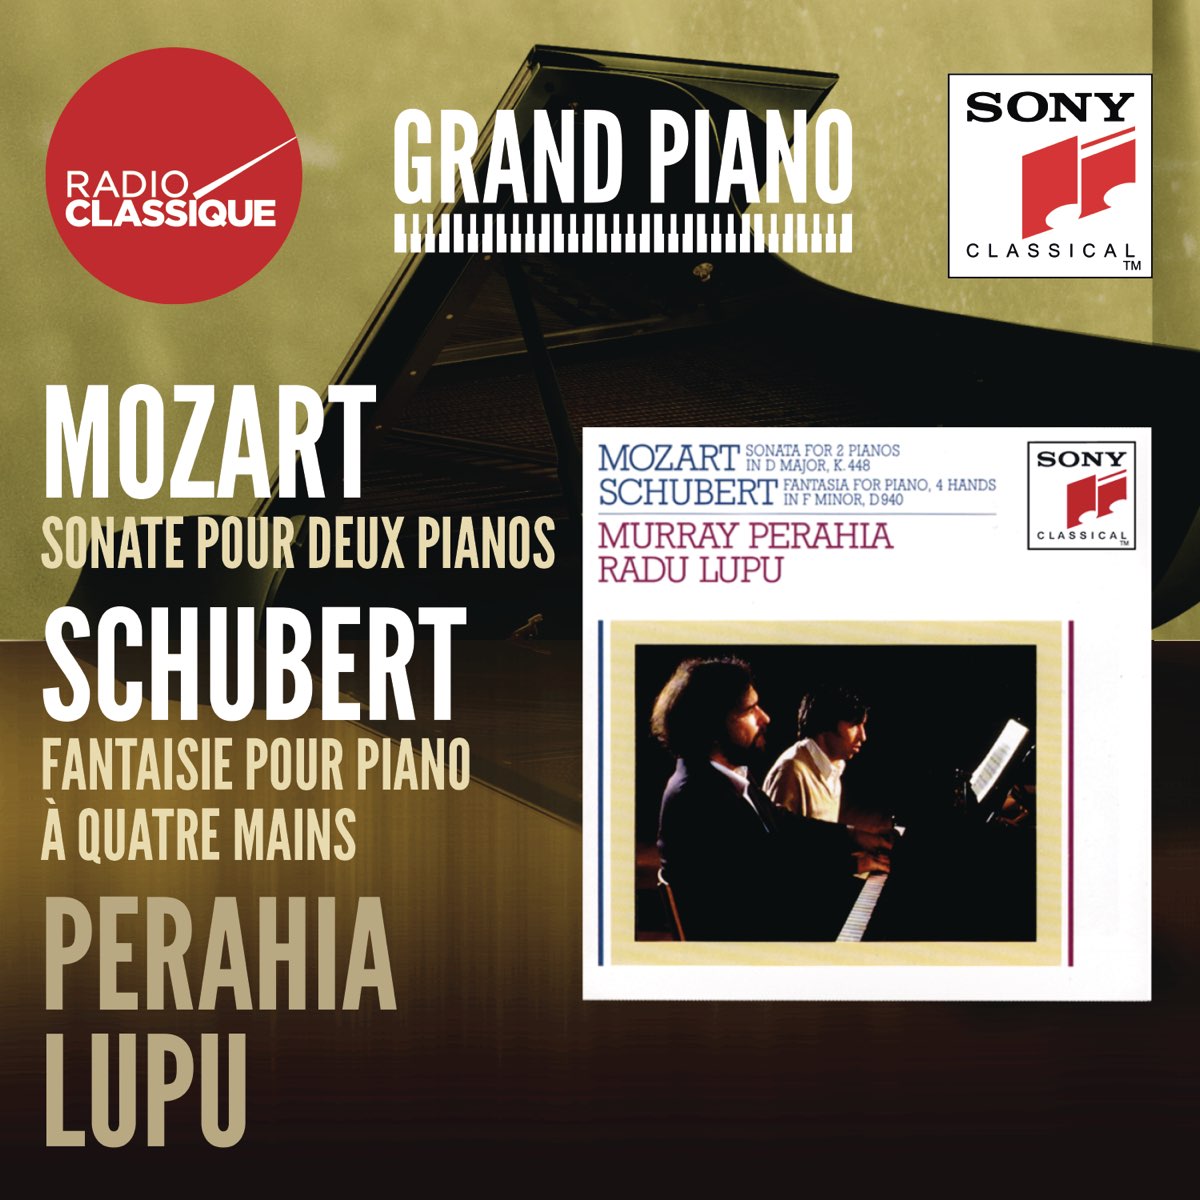 ‎Mozart / Schubert - Perahia, Lupu par Radu Lupu, Murray Perahia & Radu  Lupu & Murray Perahia sur Apple Music